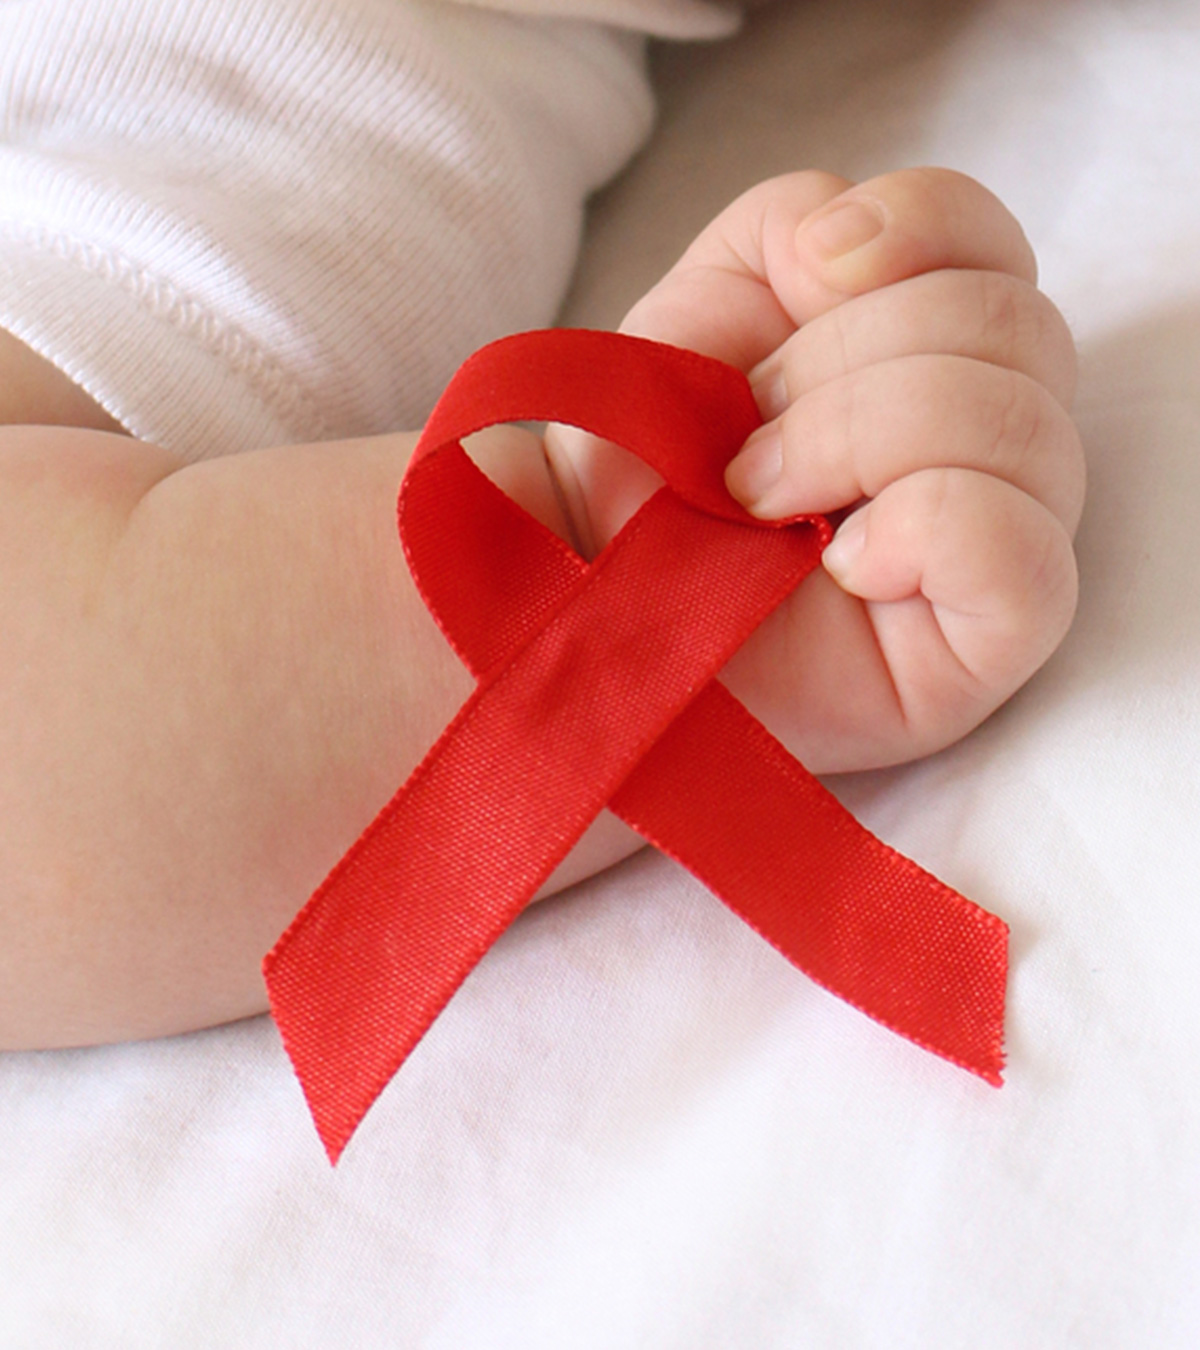 婴儿感染艾滋病毒:原因、症状、诊断和治疗